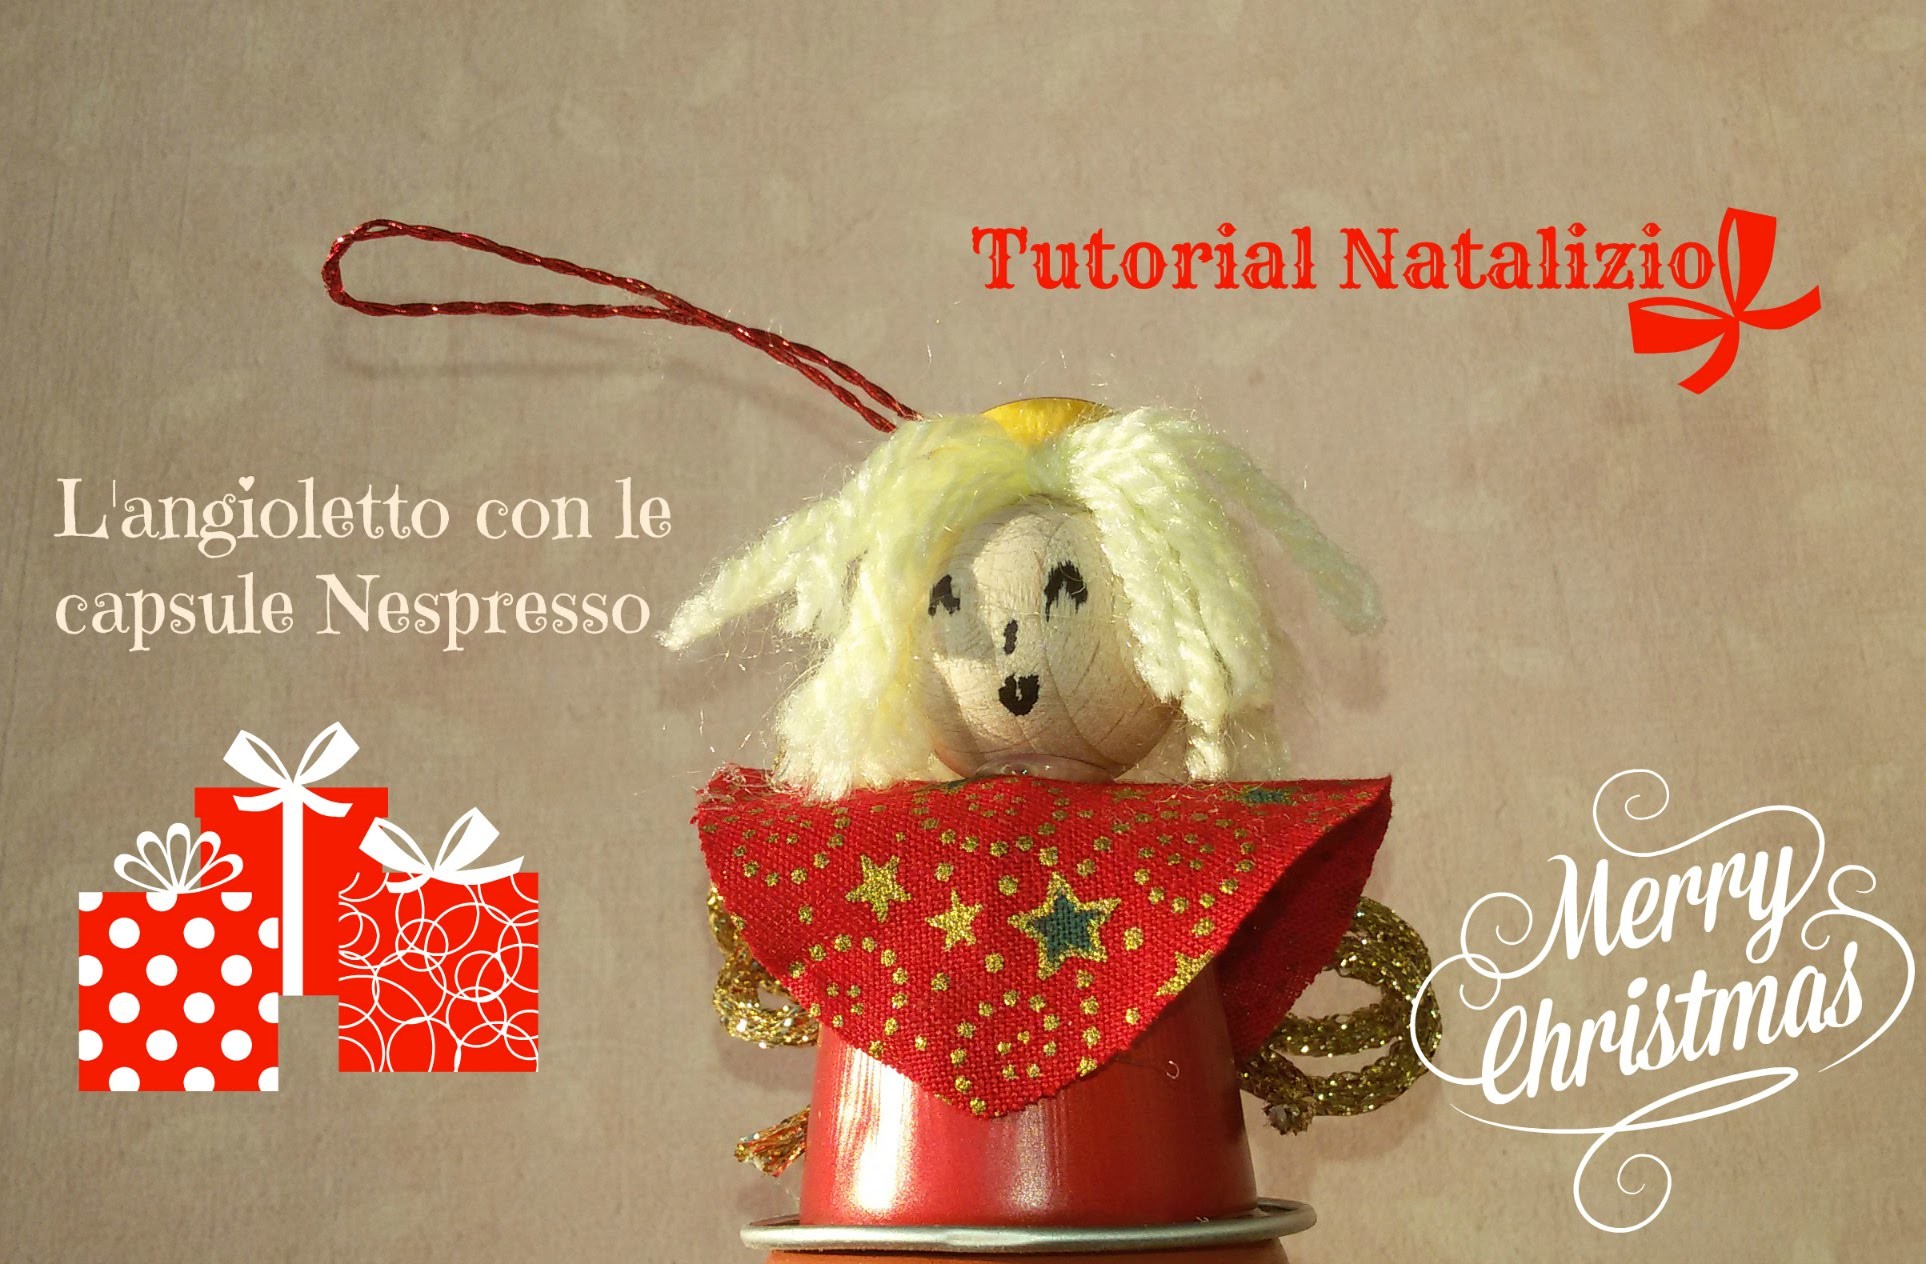 Speciale Natale: Tutorial facile per realizzare un angioletto con le capsule Nespresso